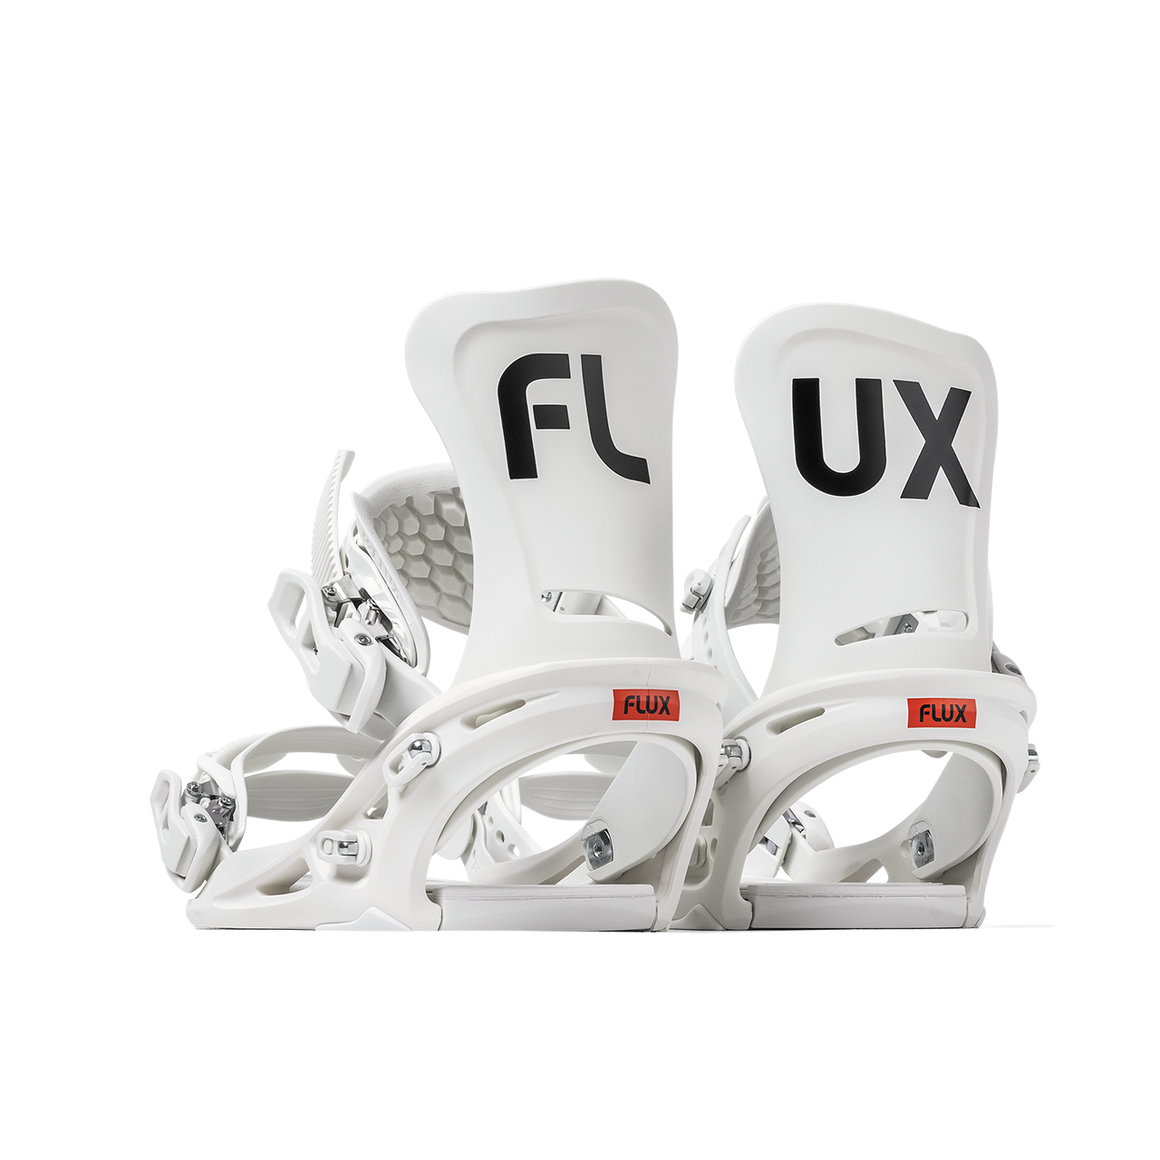 FLUX GS xsサイズ